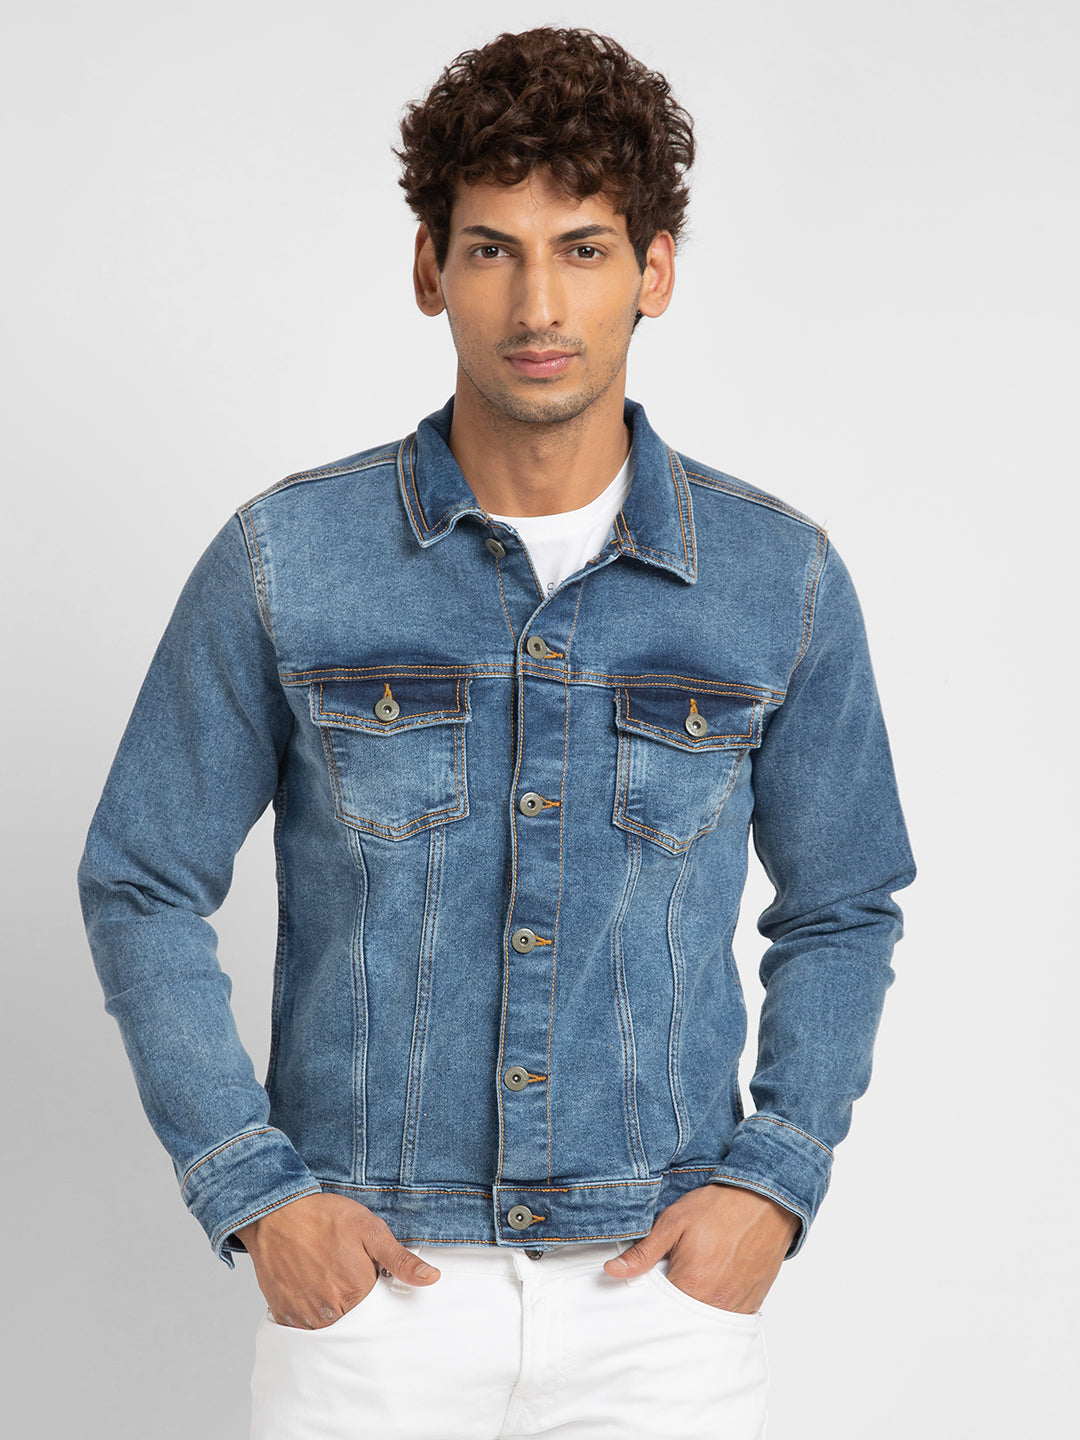 LZLER Hoodie Jean Jacket for Men,Casual Slim Fit Men's Denim Jacket with  Hood | eBay